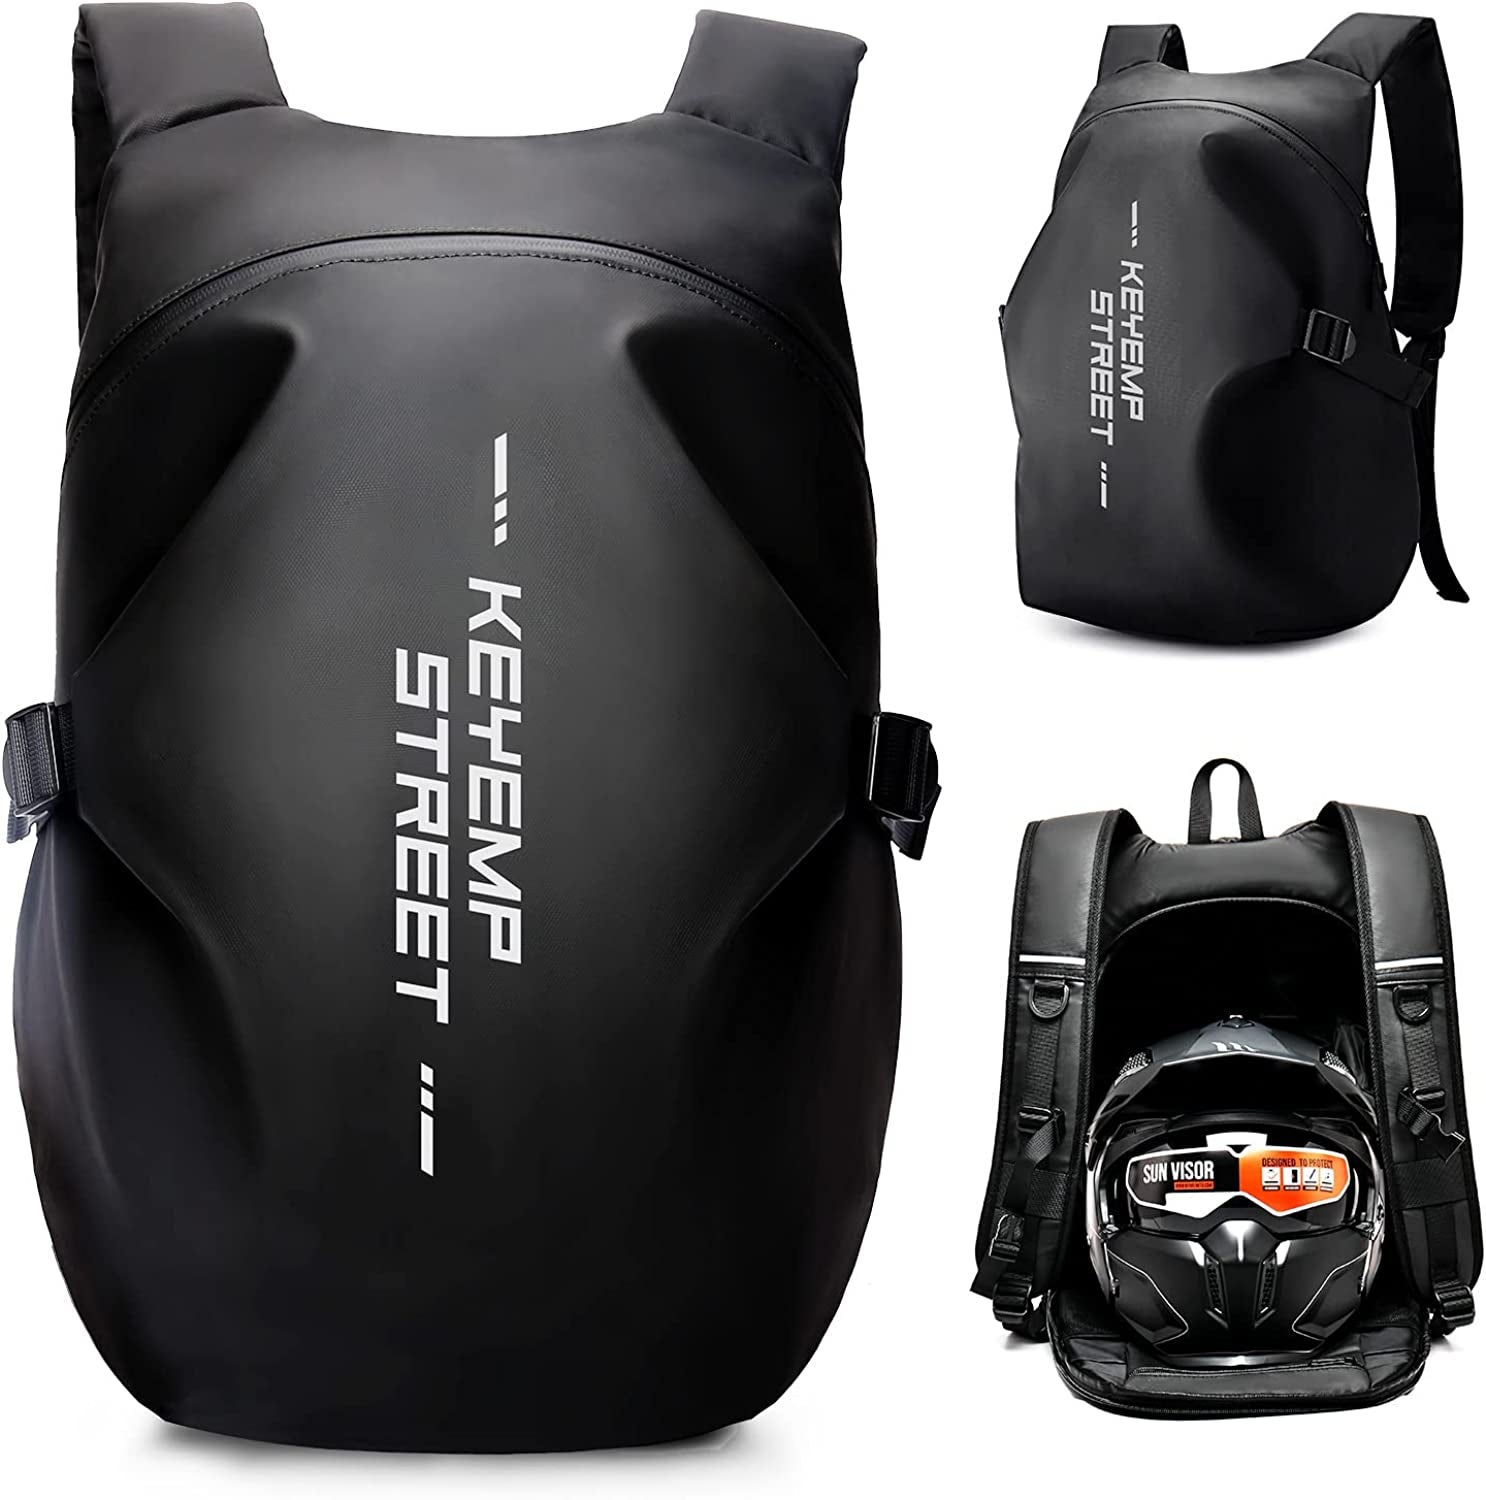 WEPLAN Motorcycle Backpack,Waterproof Helmet Backpack for Men,Motorcycle Accessories,Travel Backpack